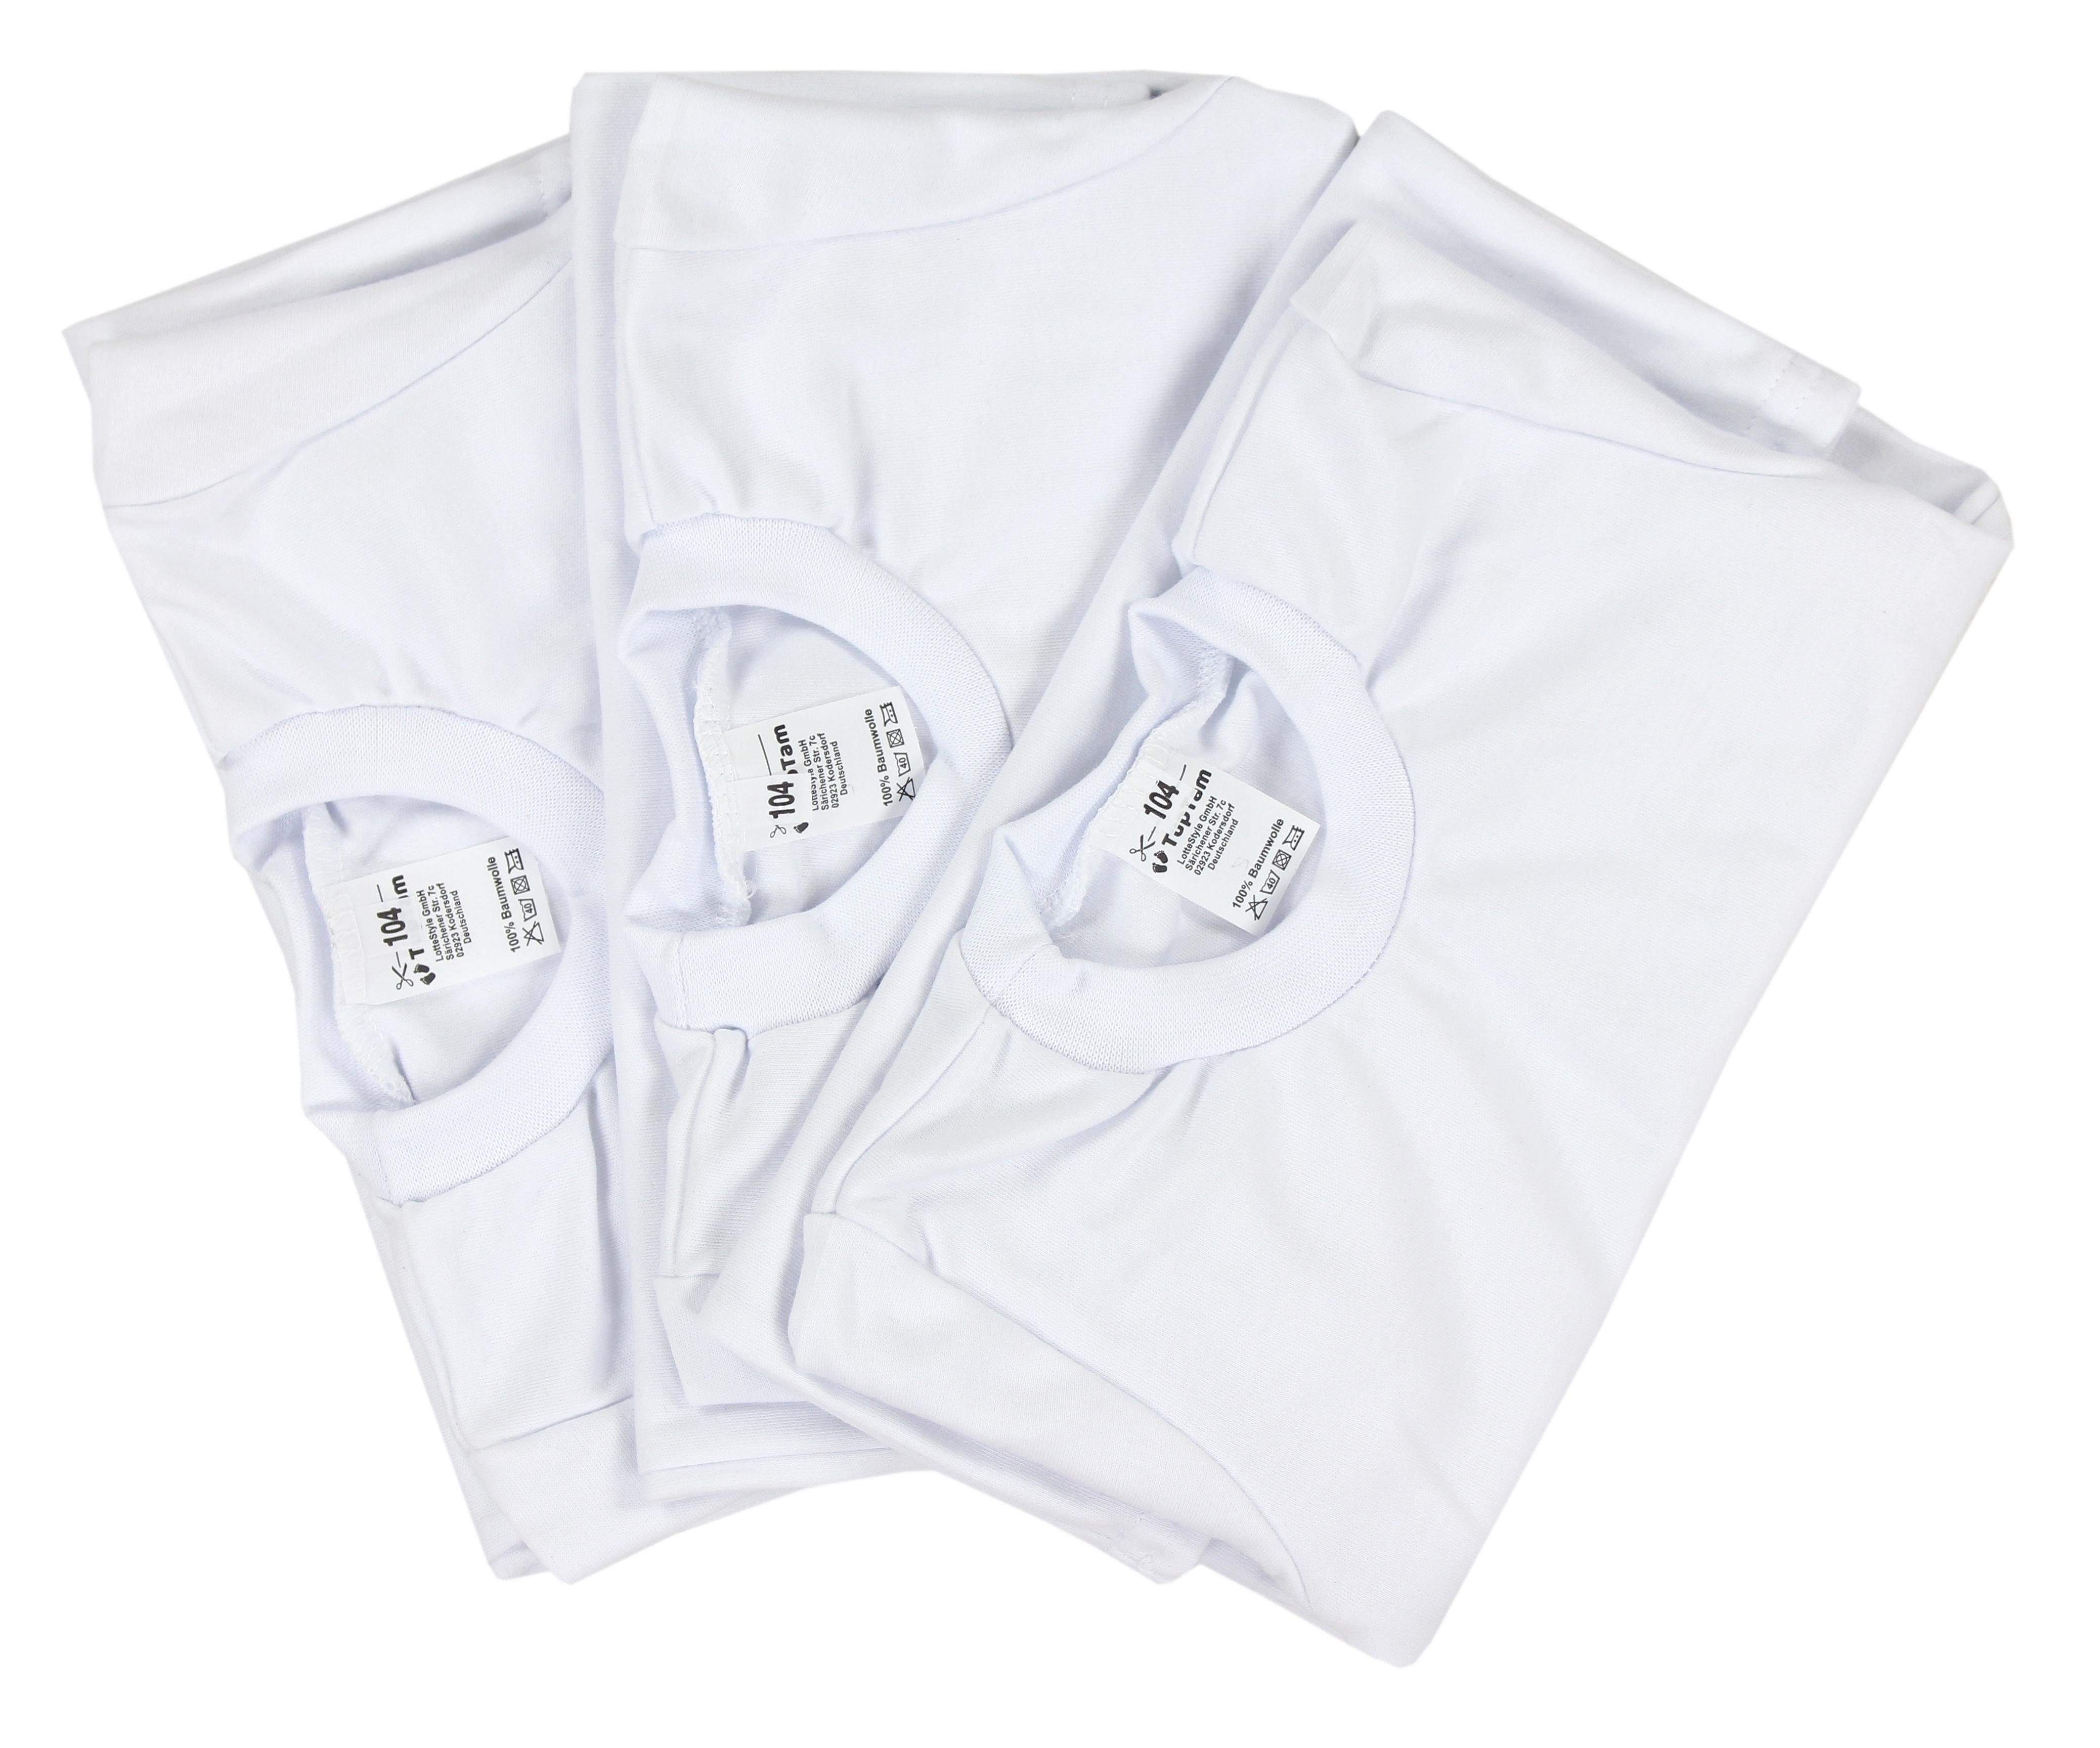 TupTam Unterhemd TupTam Kinder Unterhemd Unisex Pack Weiß Langarm 3er